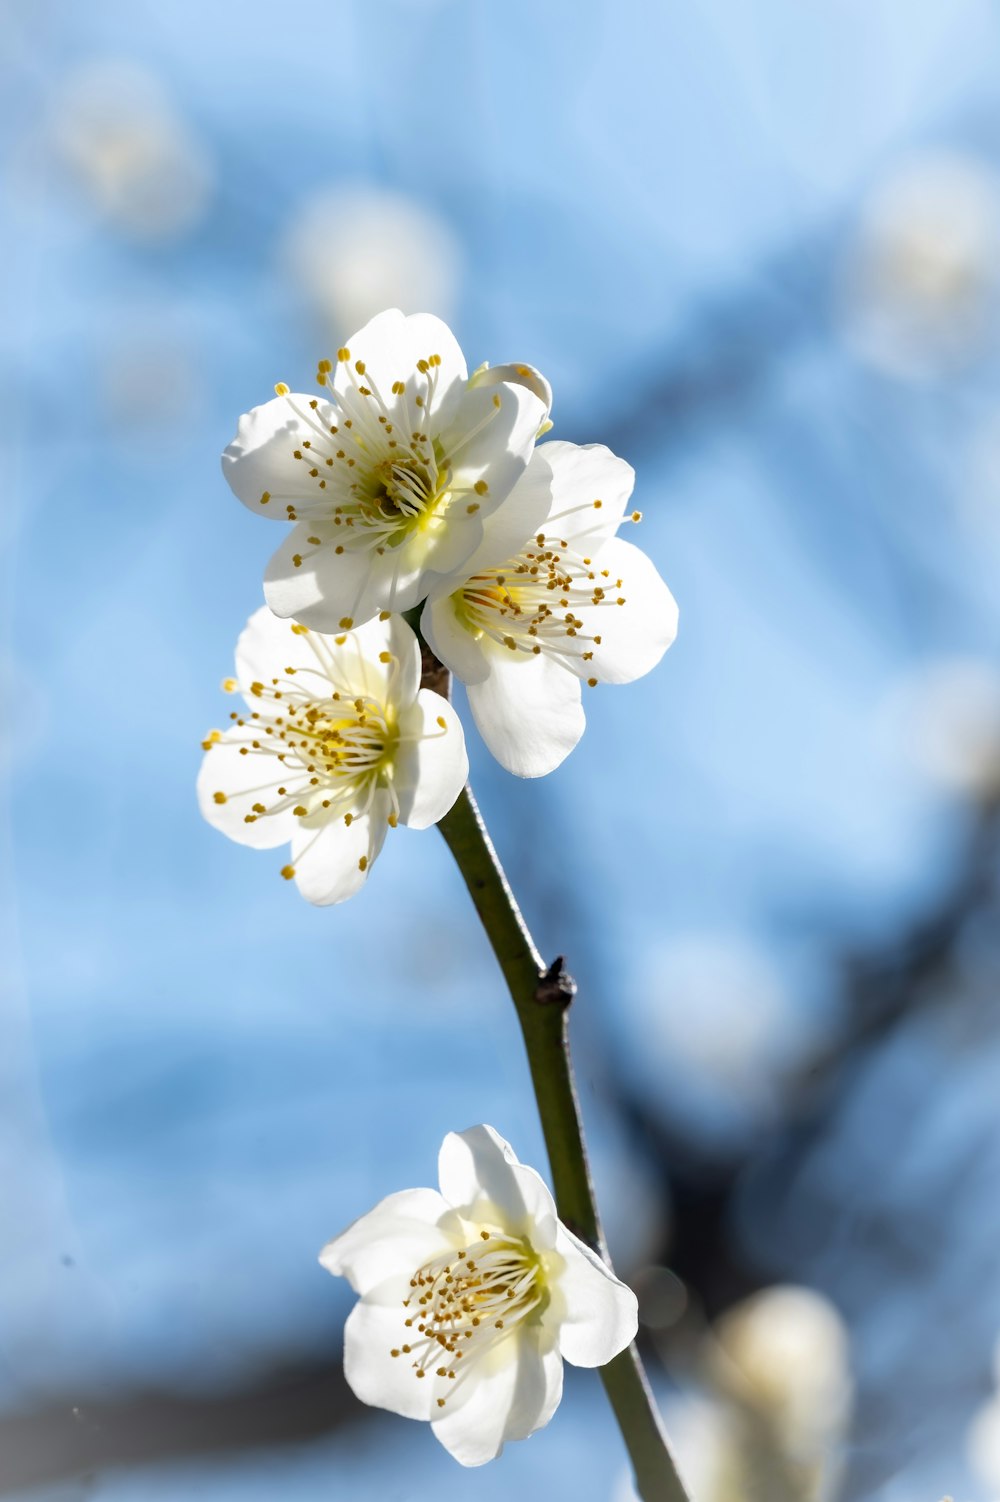 Un primer plano de una flor blanca en una rama